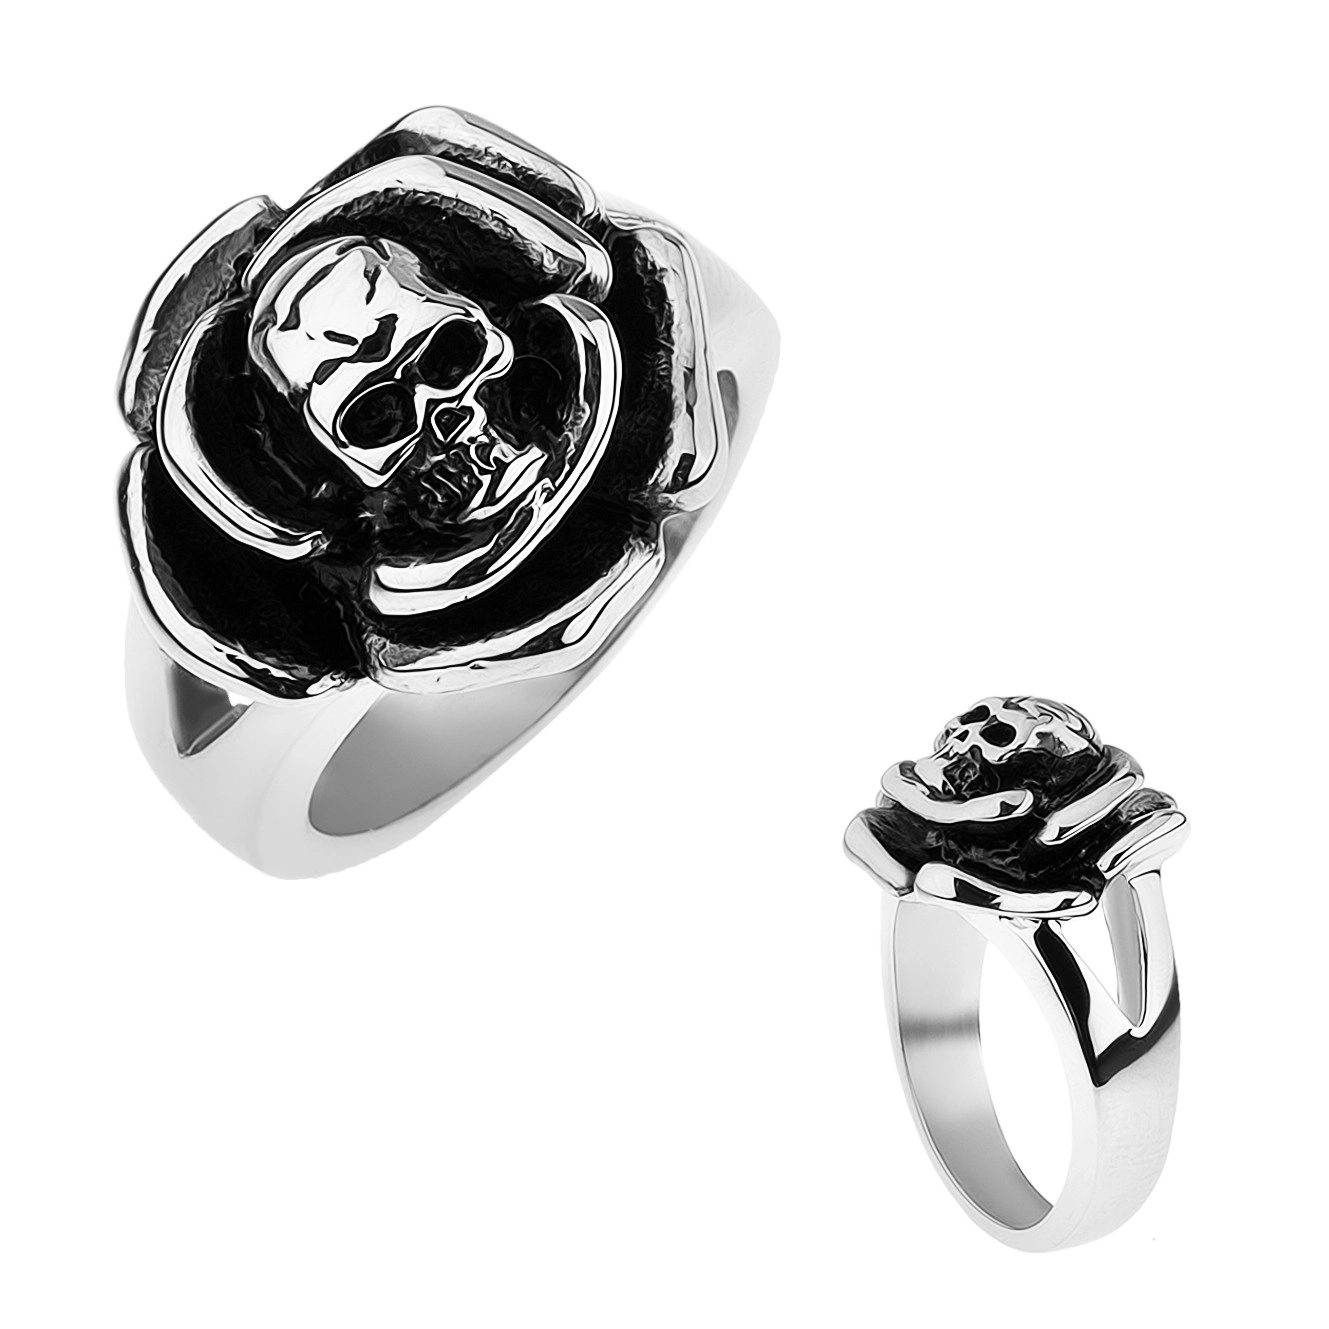 Patinovaný ocelový prsten, růže s lebkou uprostřed, rozdvojená ramena - Velikost: 60